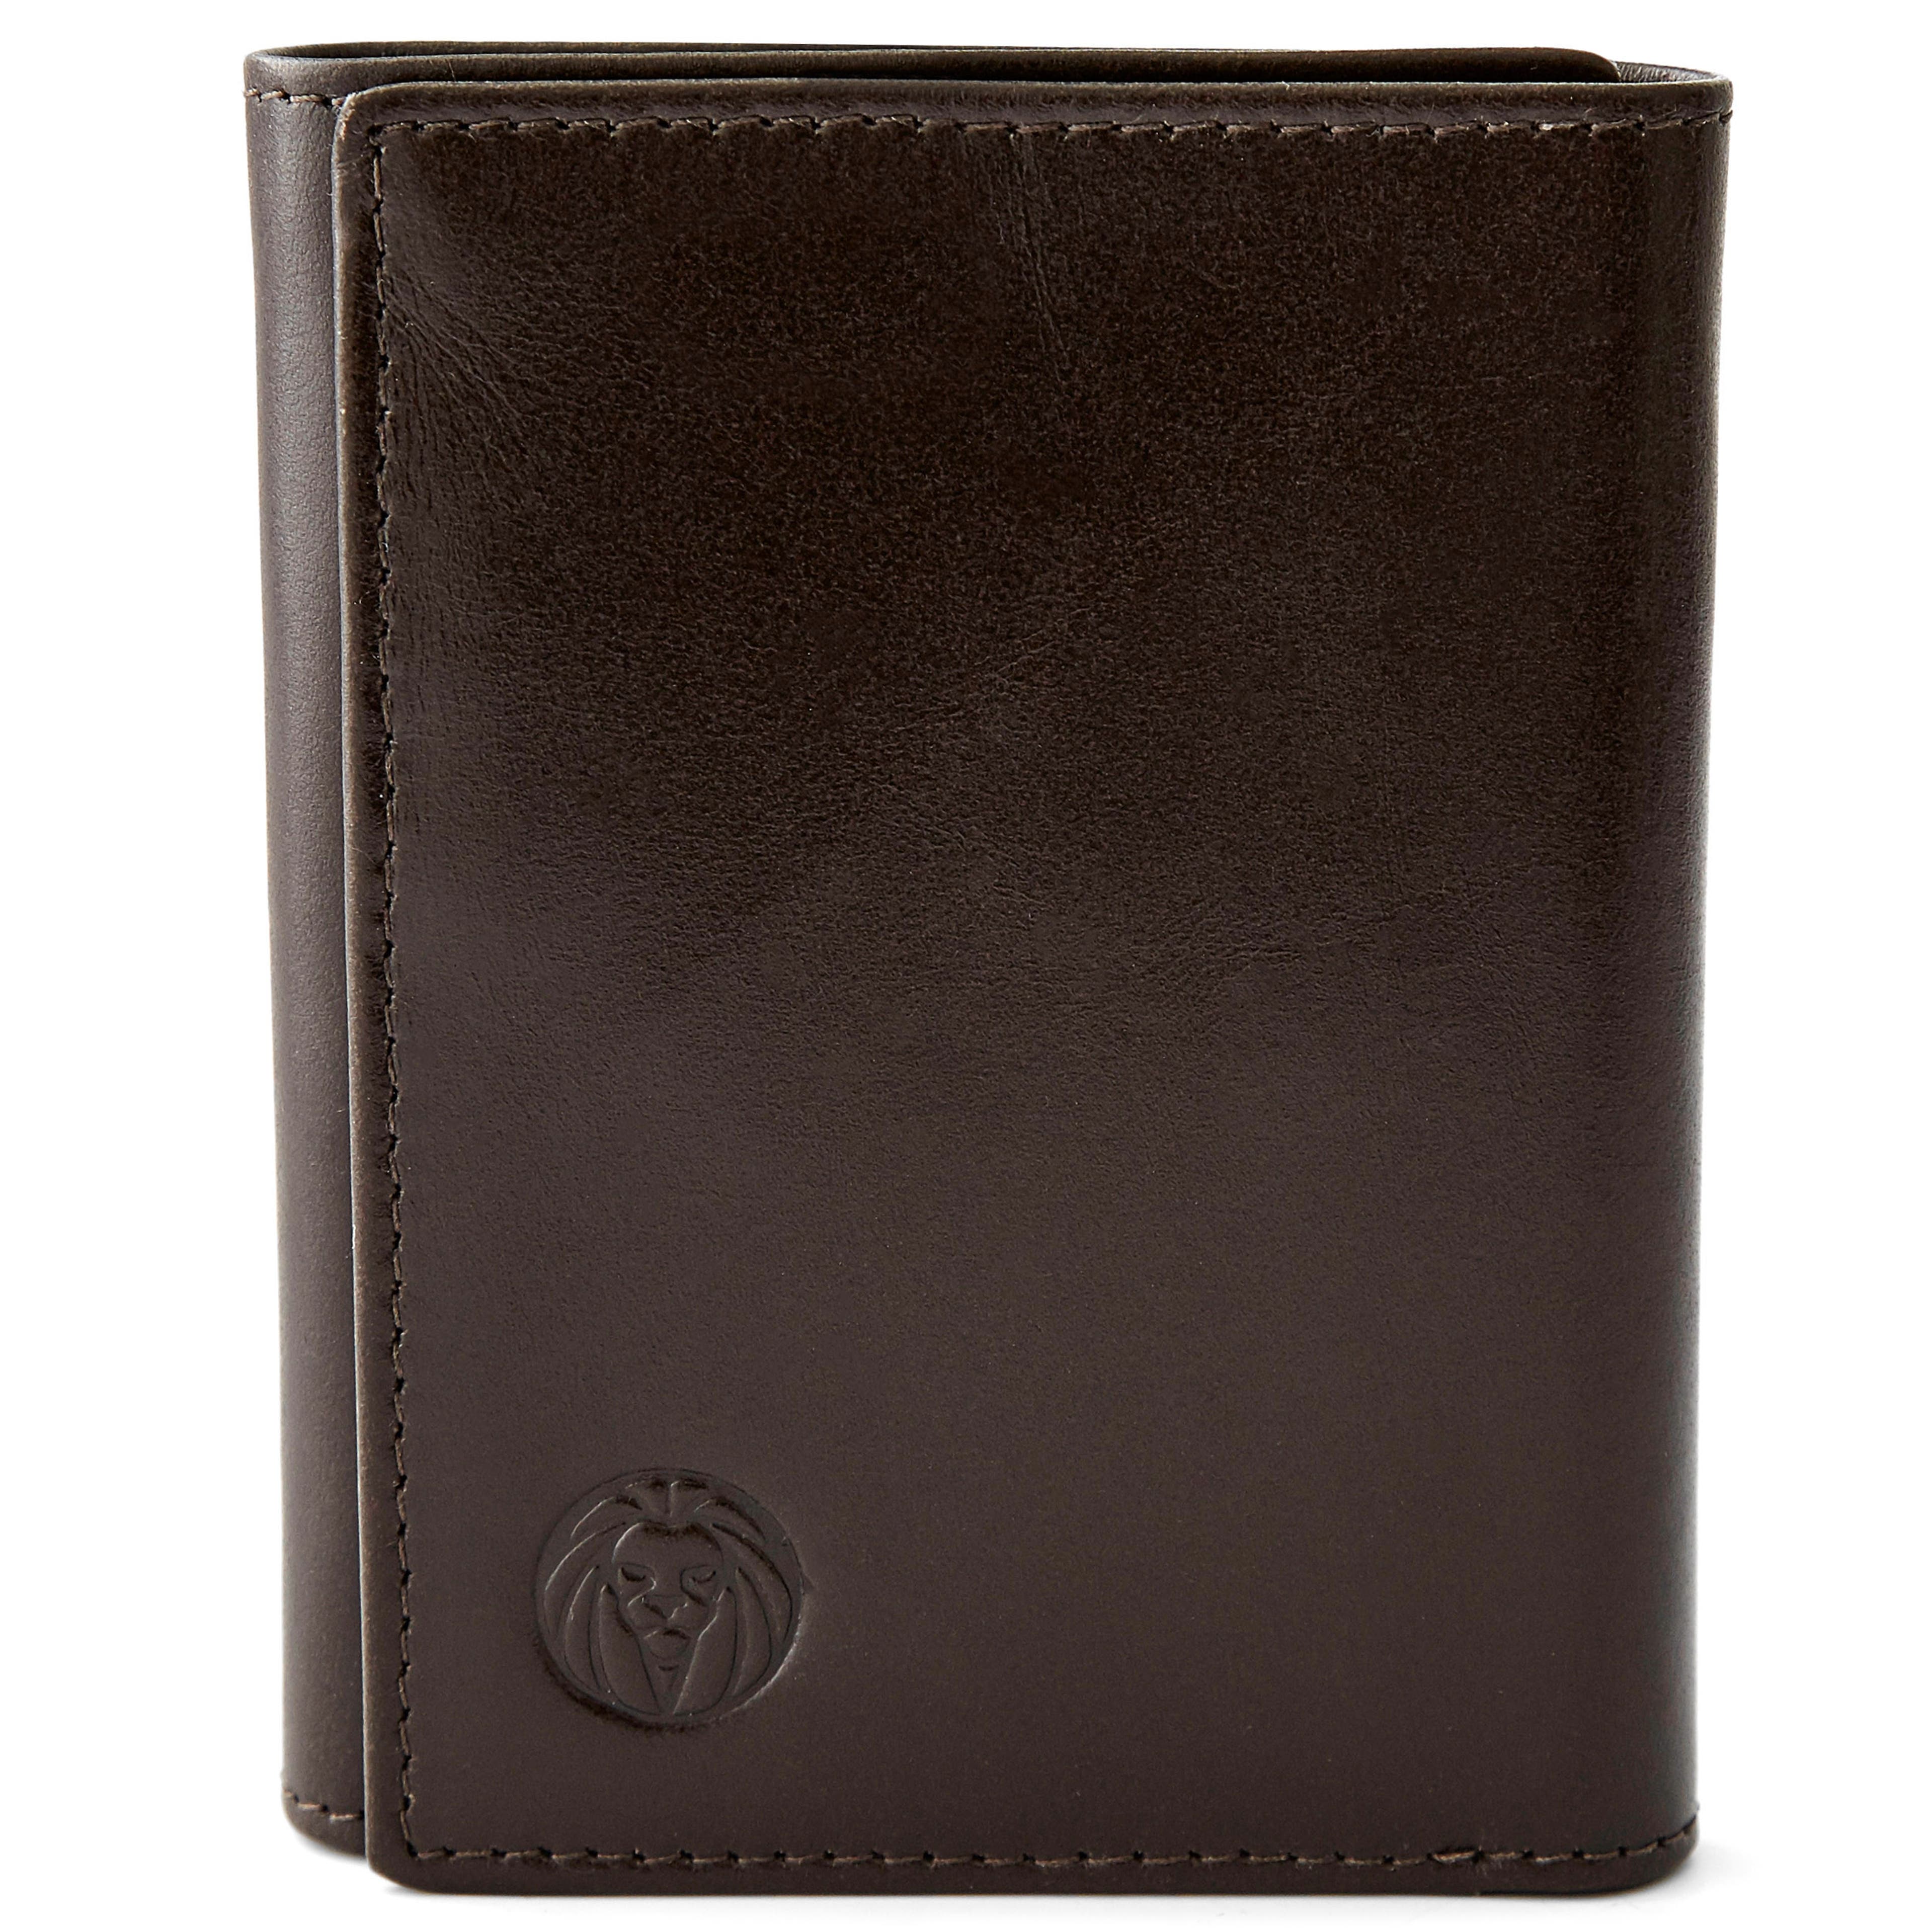 Hnedá trojdielna peňaženka s RFID ochranou